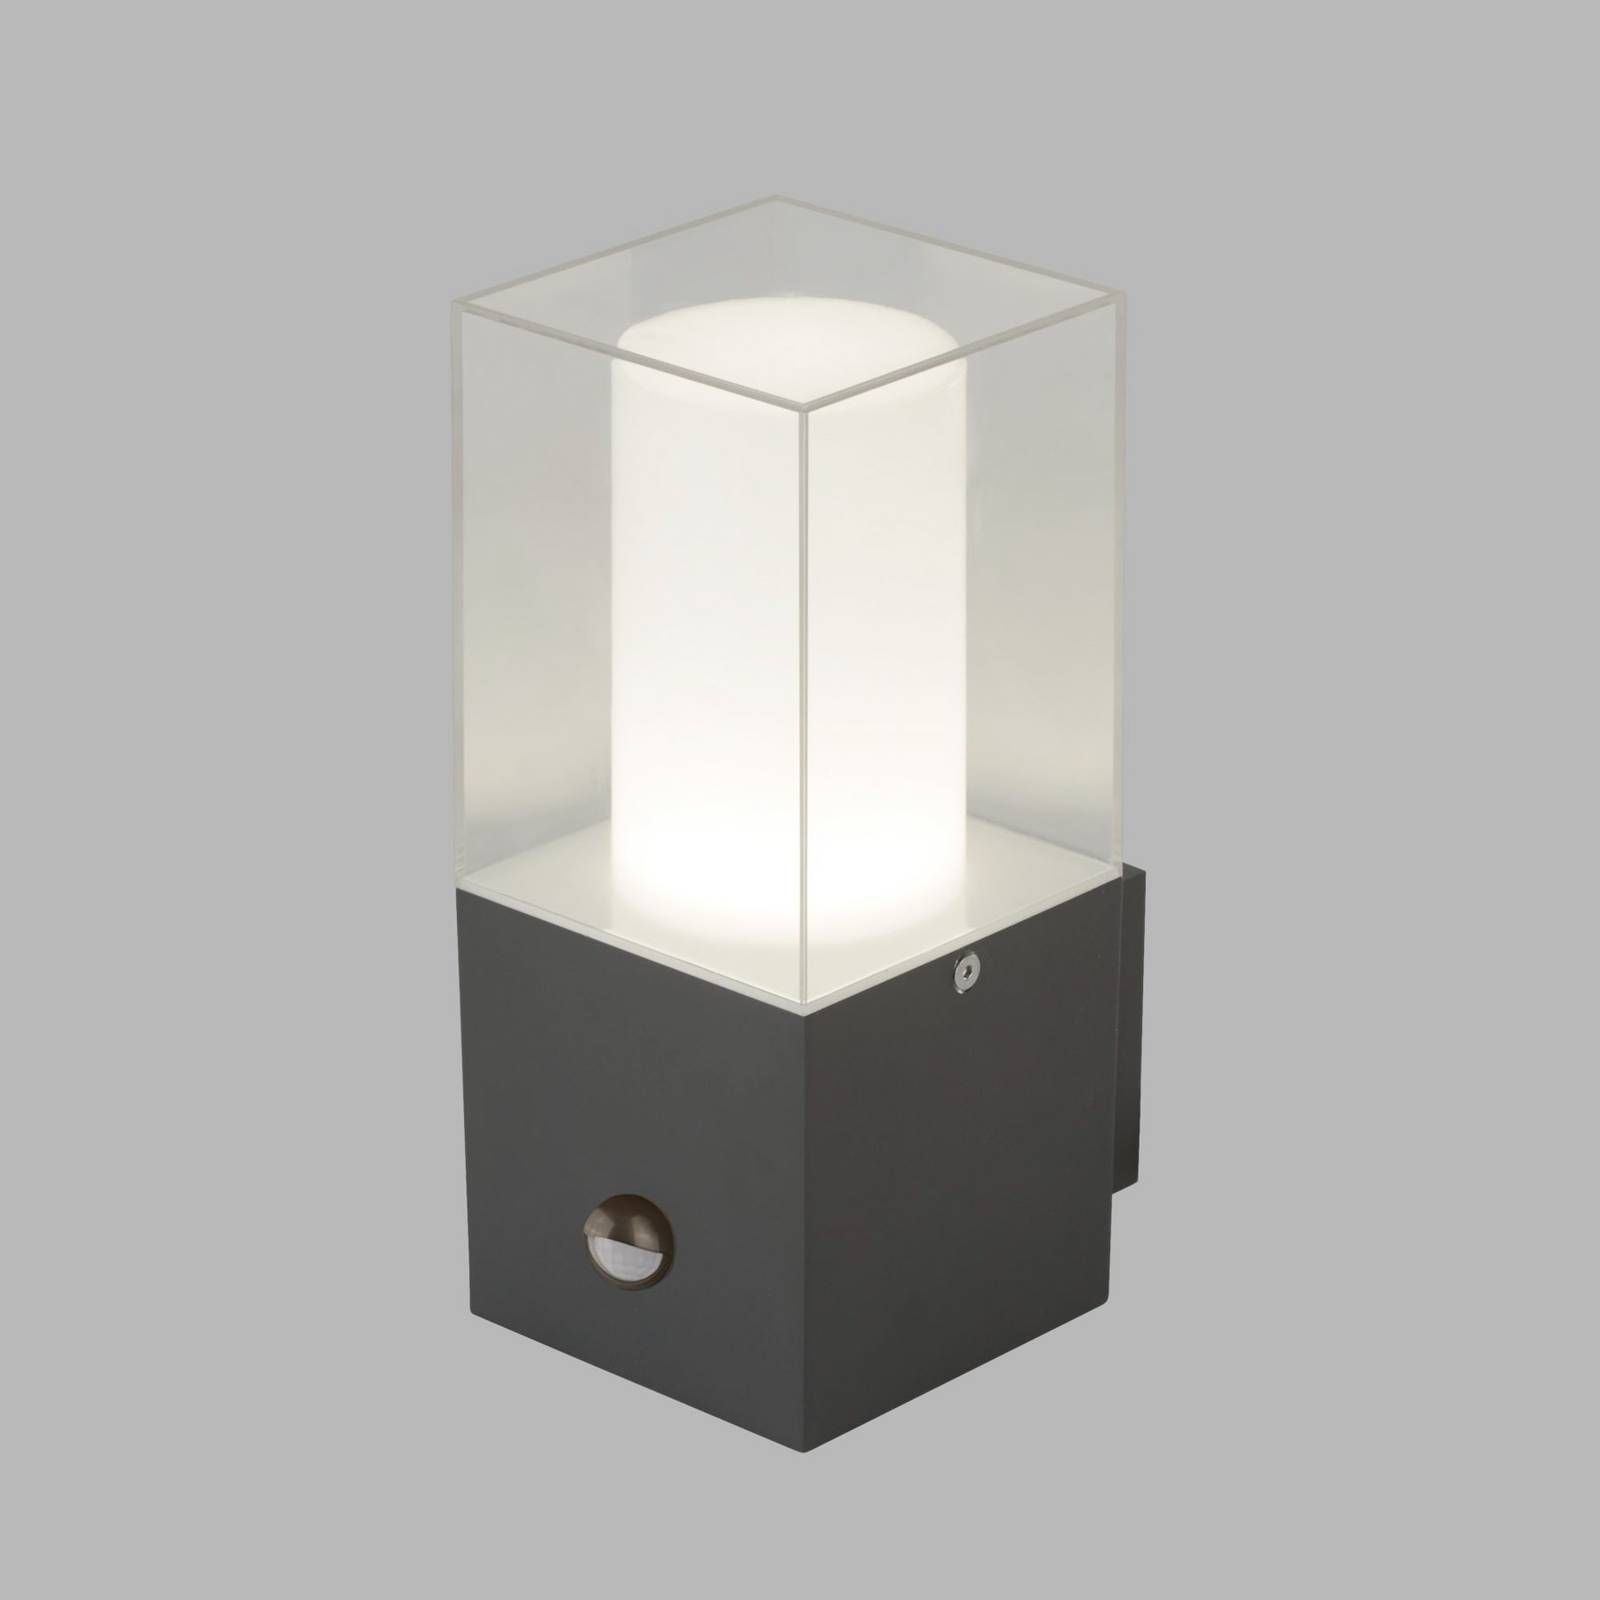 Searchlight Vonkajšie svietidlo Granada so snímačom, tmavosivá, tlakový odliatok hliníka, polykarbonát, E27, 60W, P: 10 cm, L: 10 cm, K: 23cm